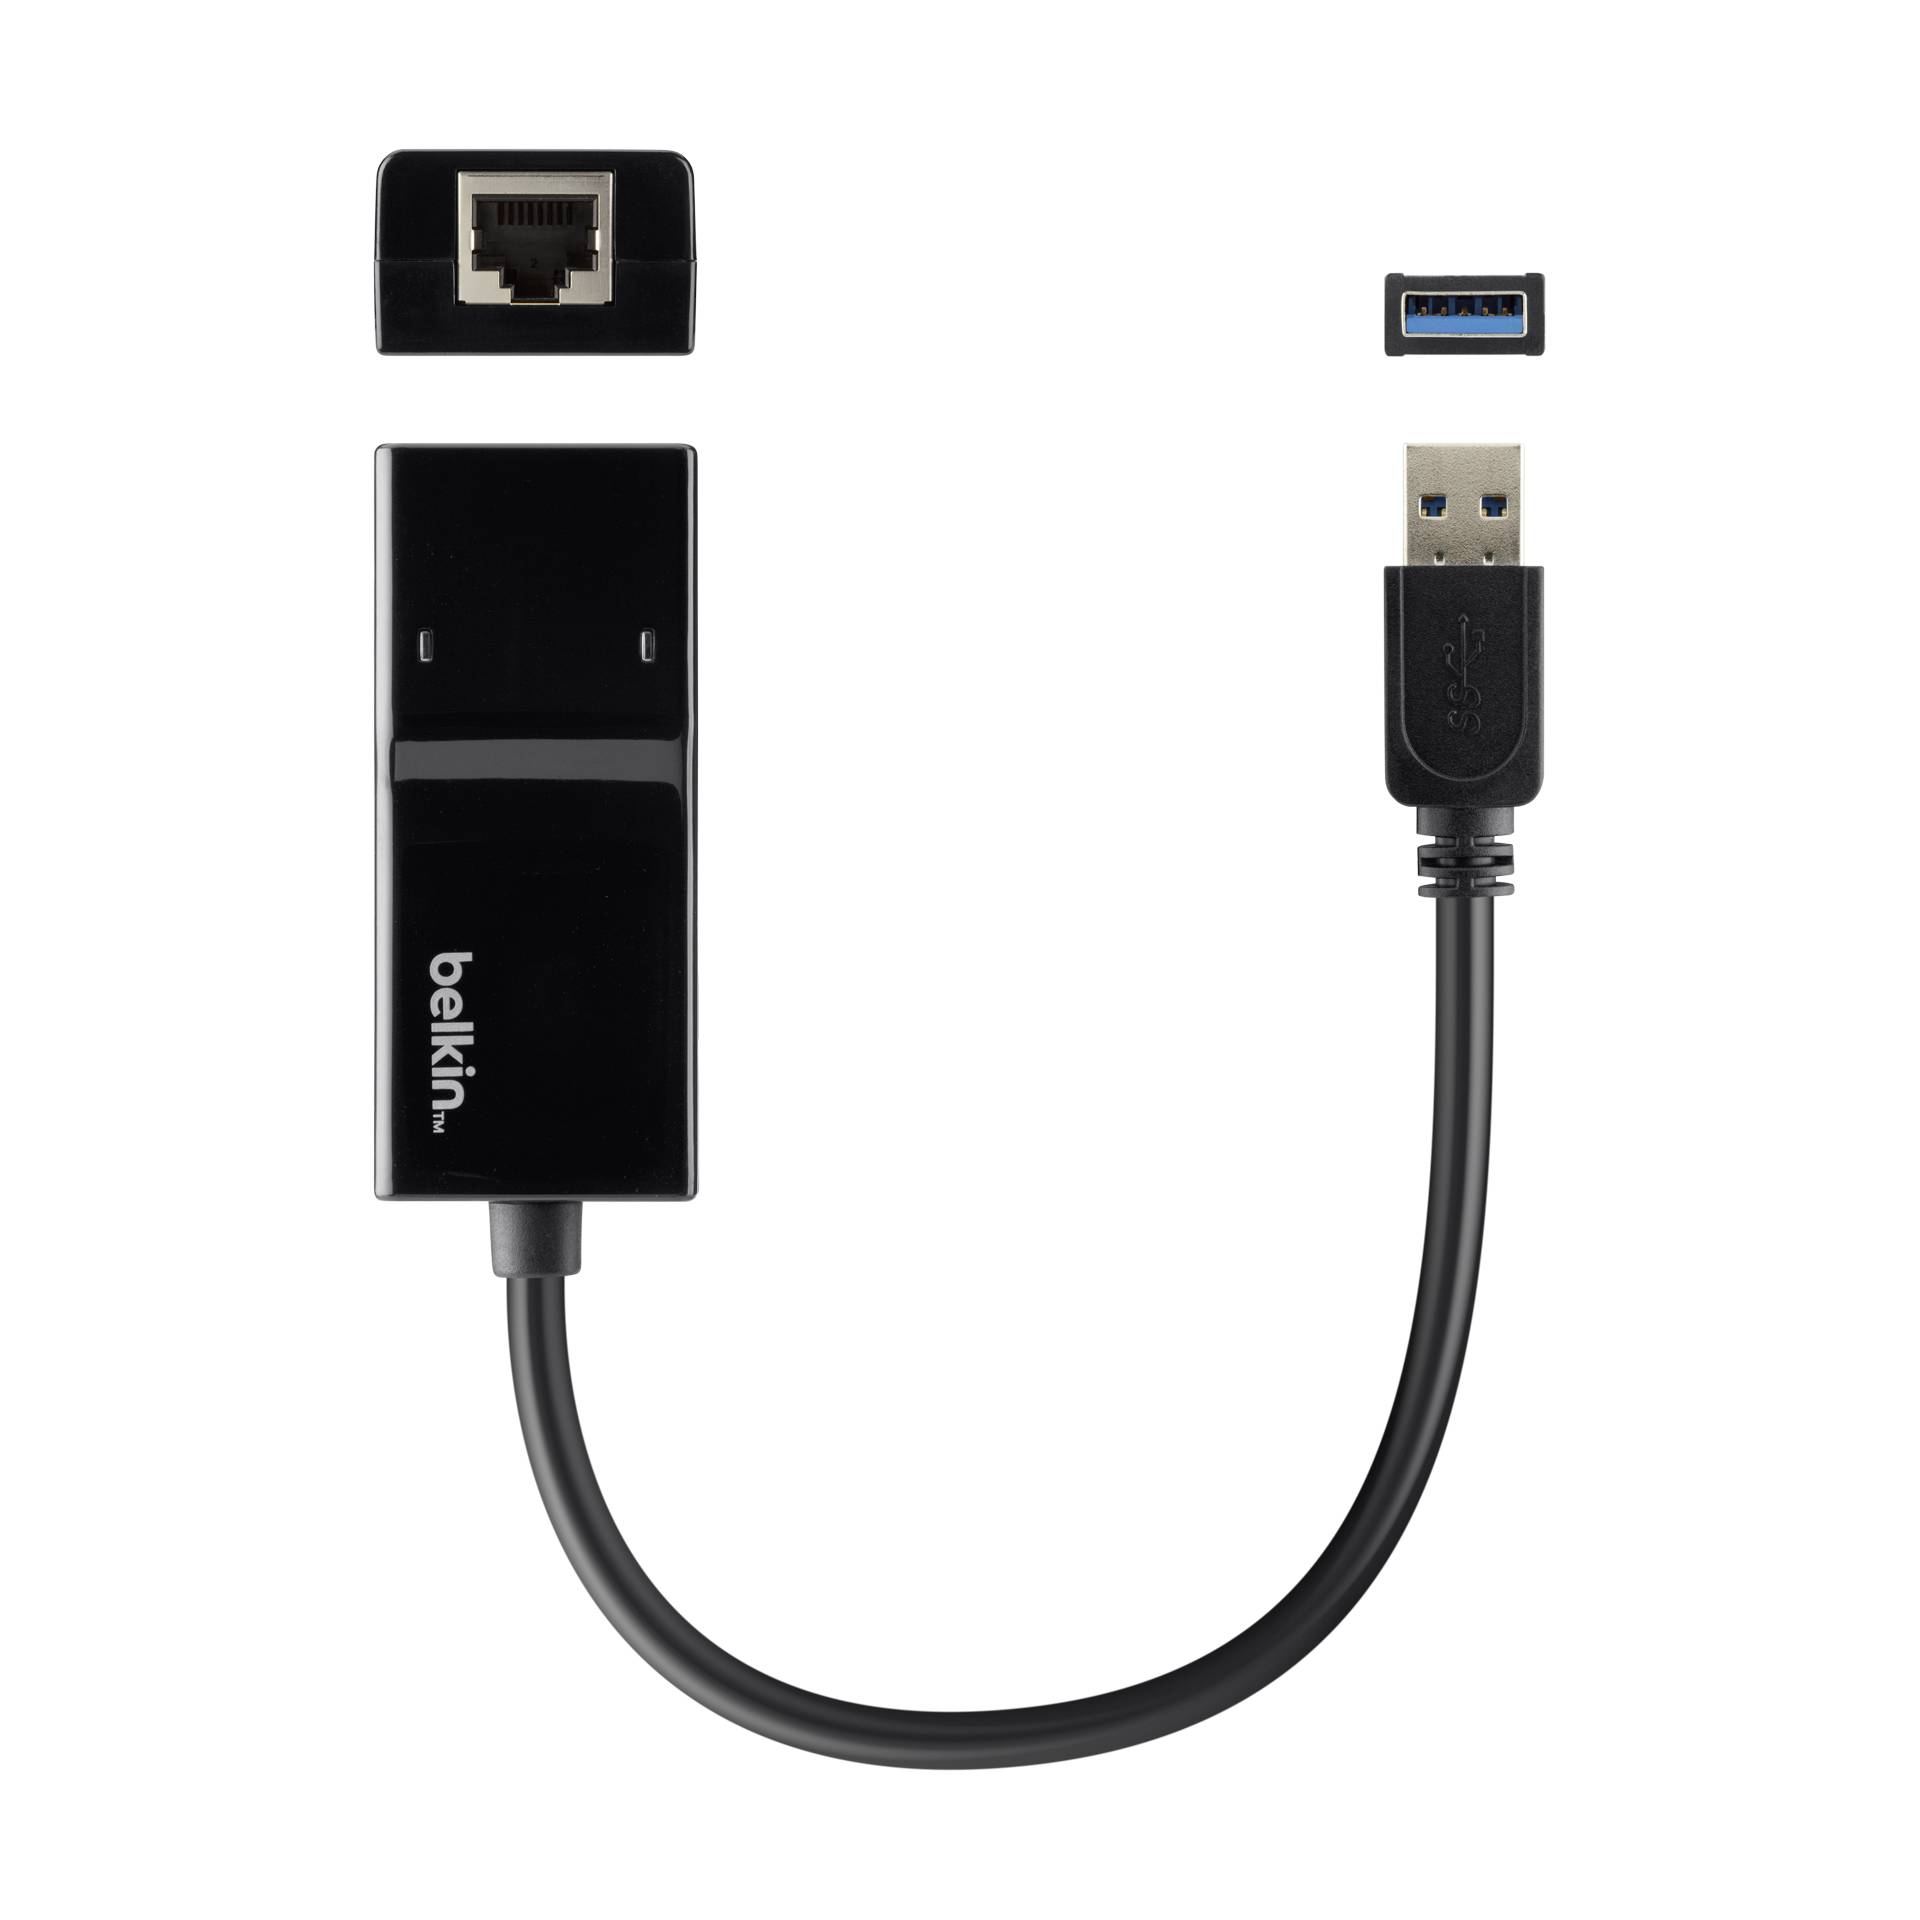 Belkin USB 3.0 Gigabit Ethernet adatt. 10/100/1000Mbps B2B04